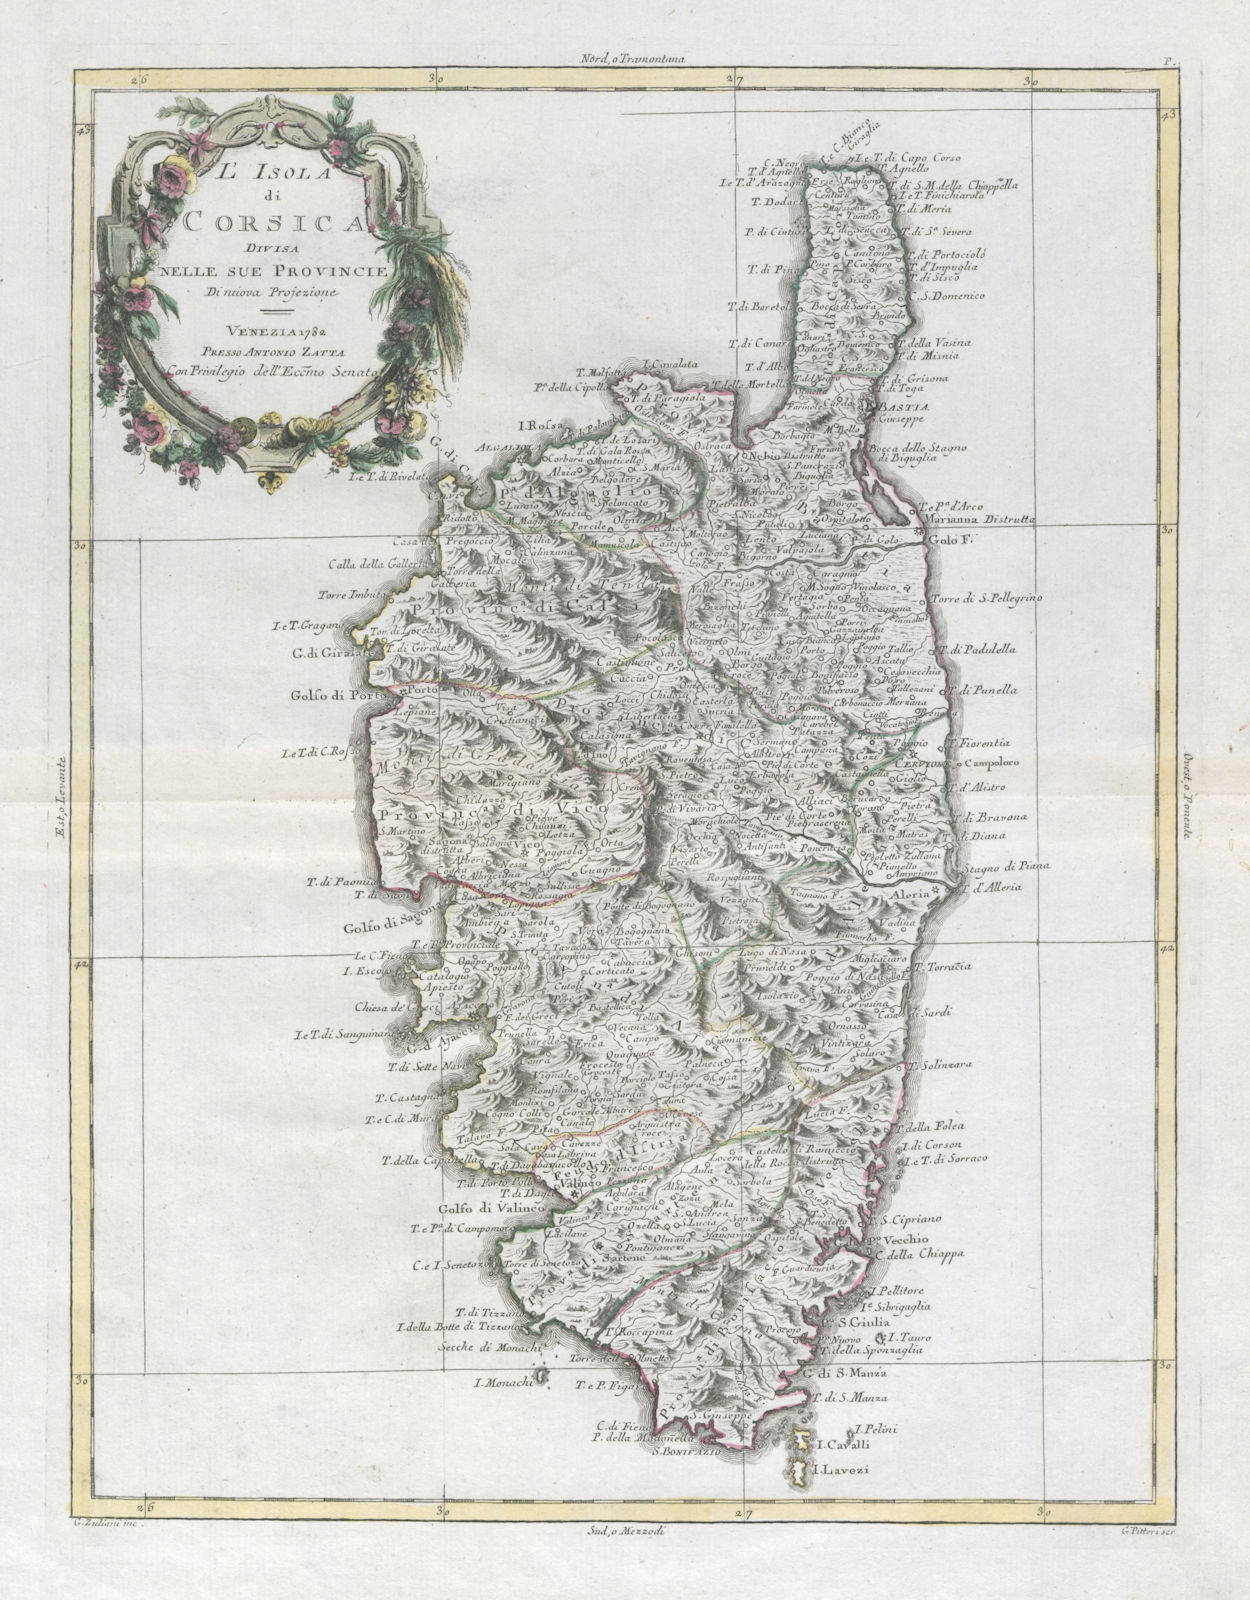 "L'Isola di Corsica divisa nelle sue provincie". ZATTA 1784 old antique map